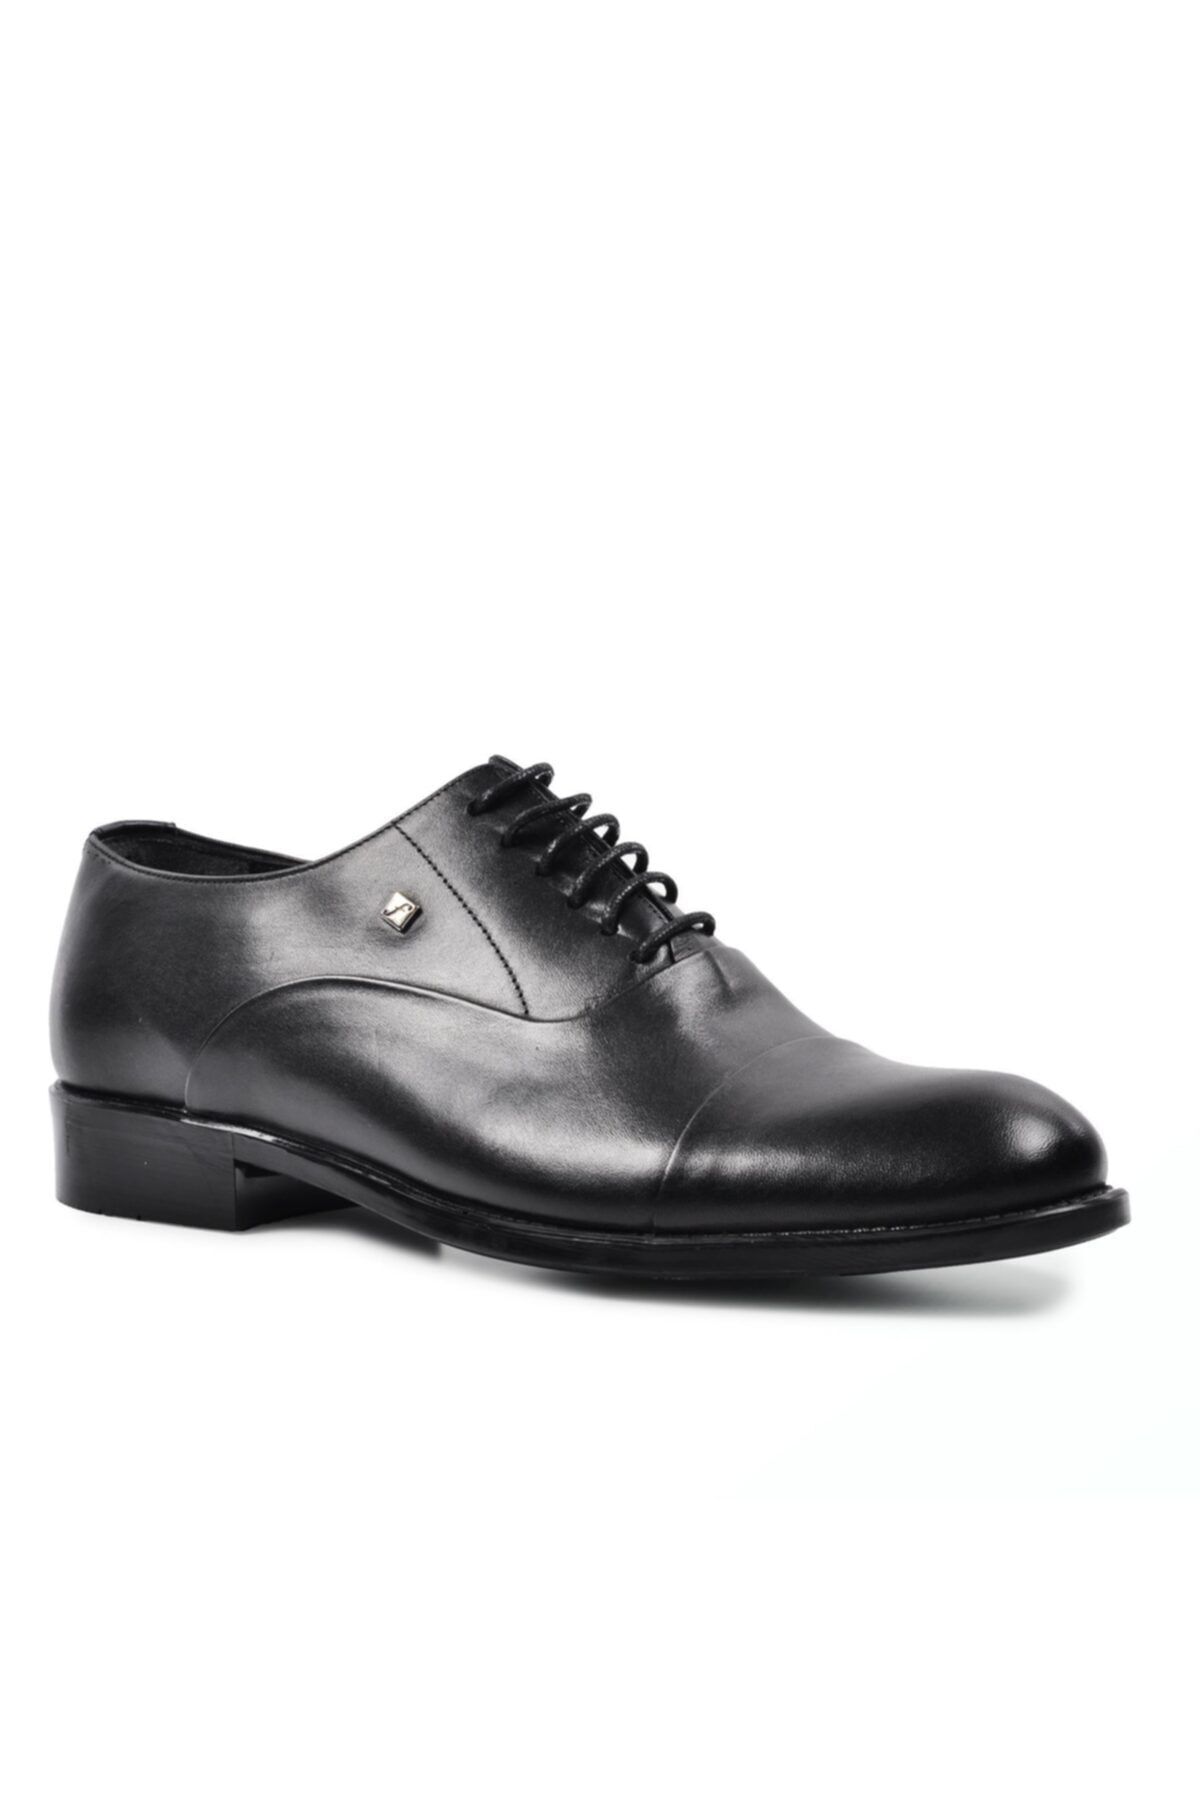 Fosco 7102 Siyah Erkek Hakiki Deri Klasik Ayakkabı